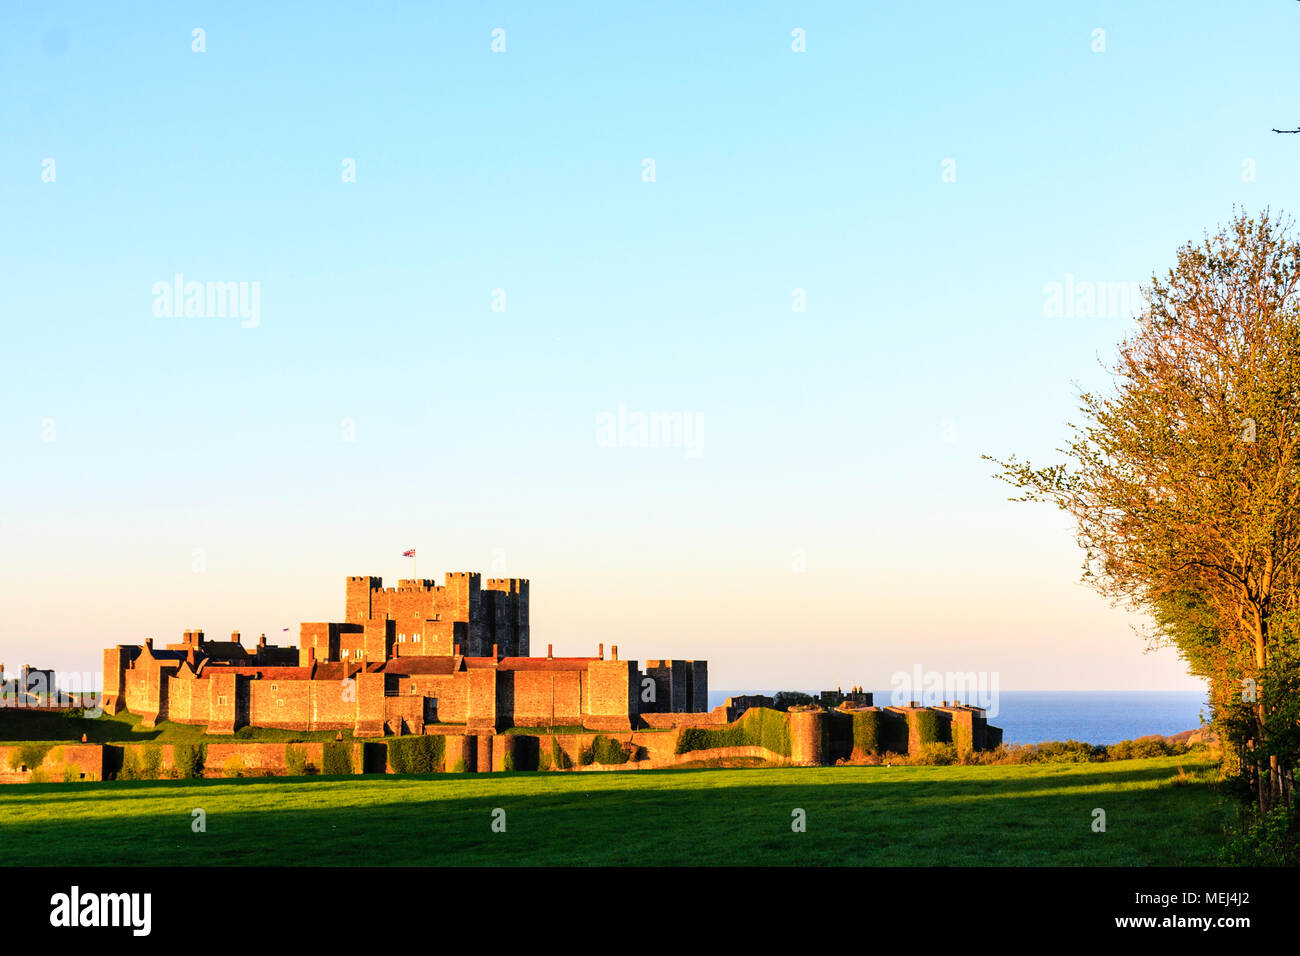 Inghilterra, il castello di Dover. Illuminato dal sole nascente (invisibile), esterno, pareti interne e di mantenere con la Manica in background. Ora d'oro cast colore all'immagine. Foto Stock